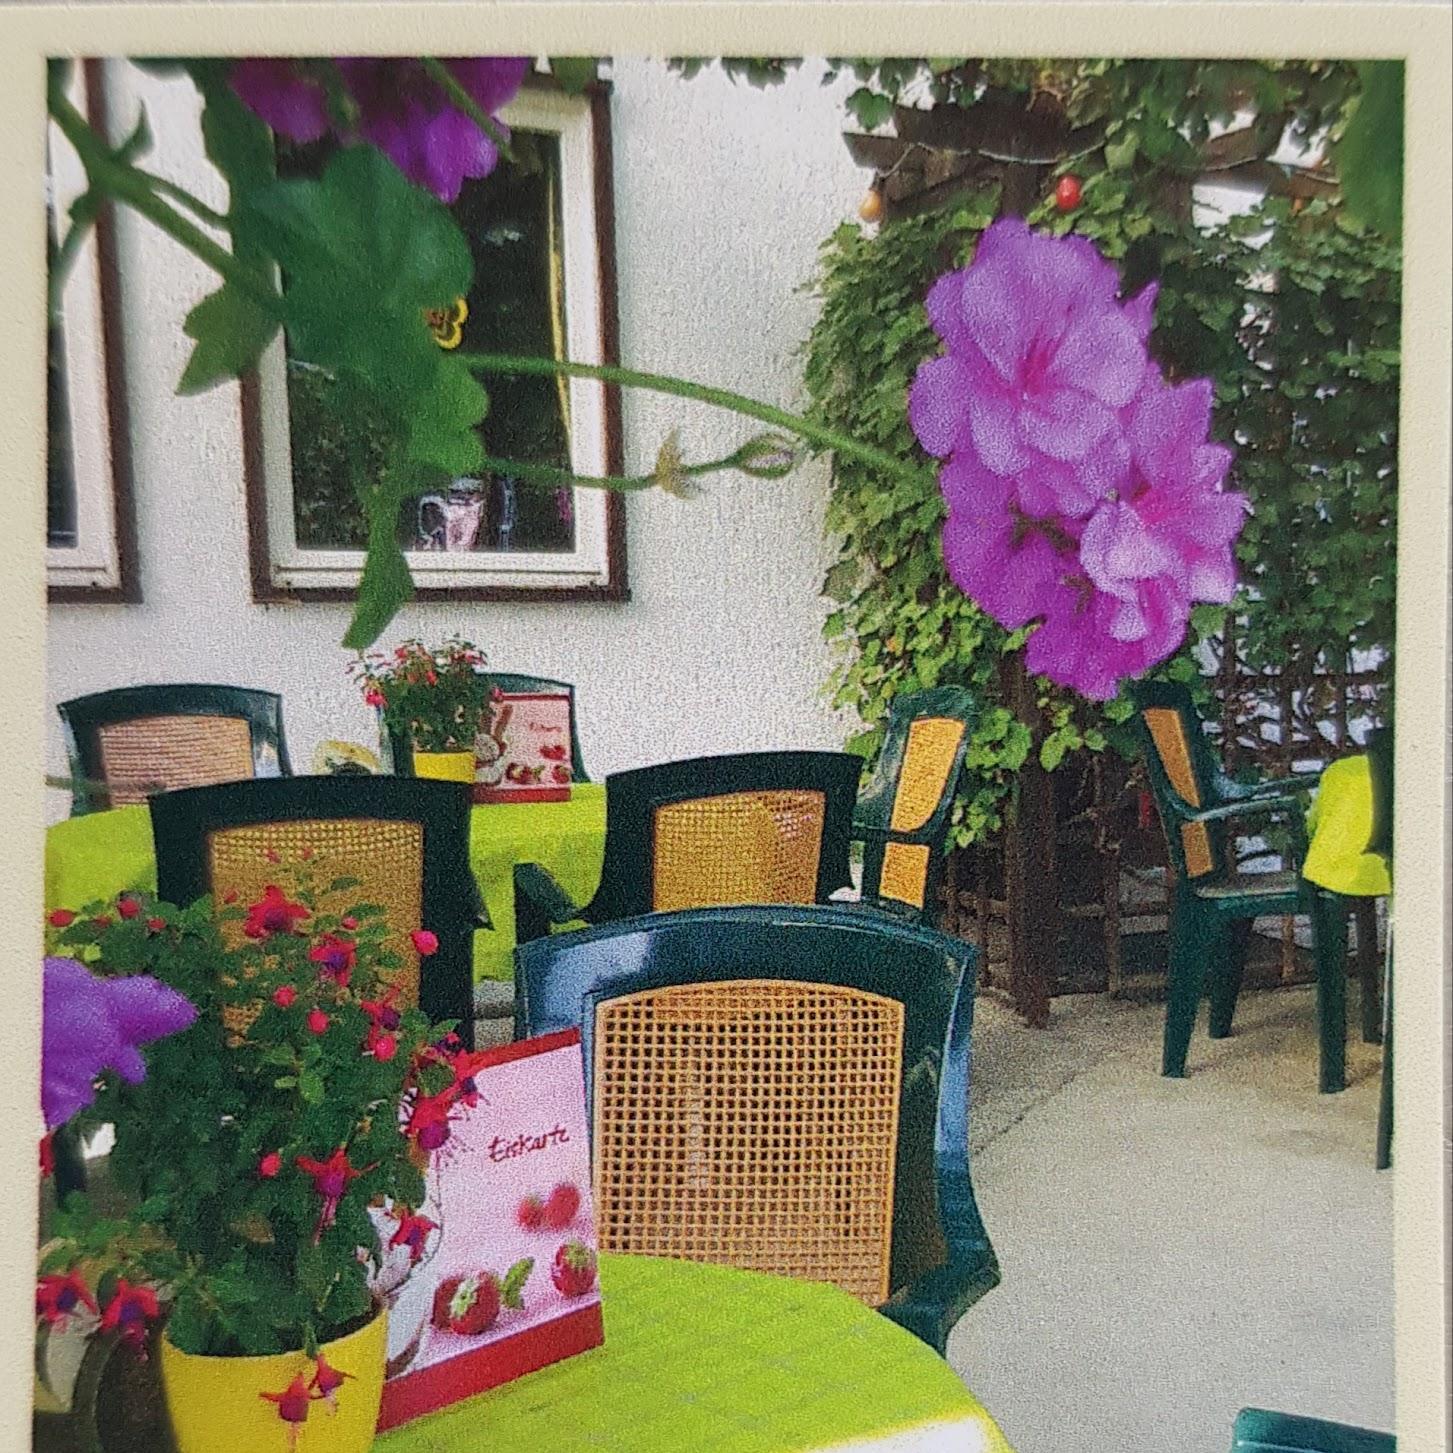 Restaurant "Ramke Gartenstüb